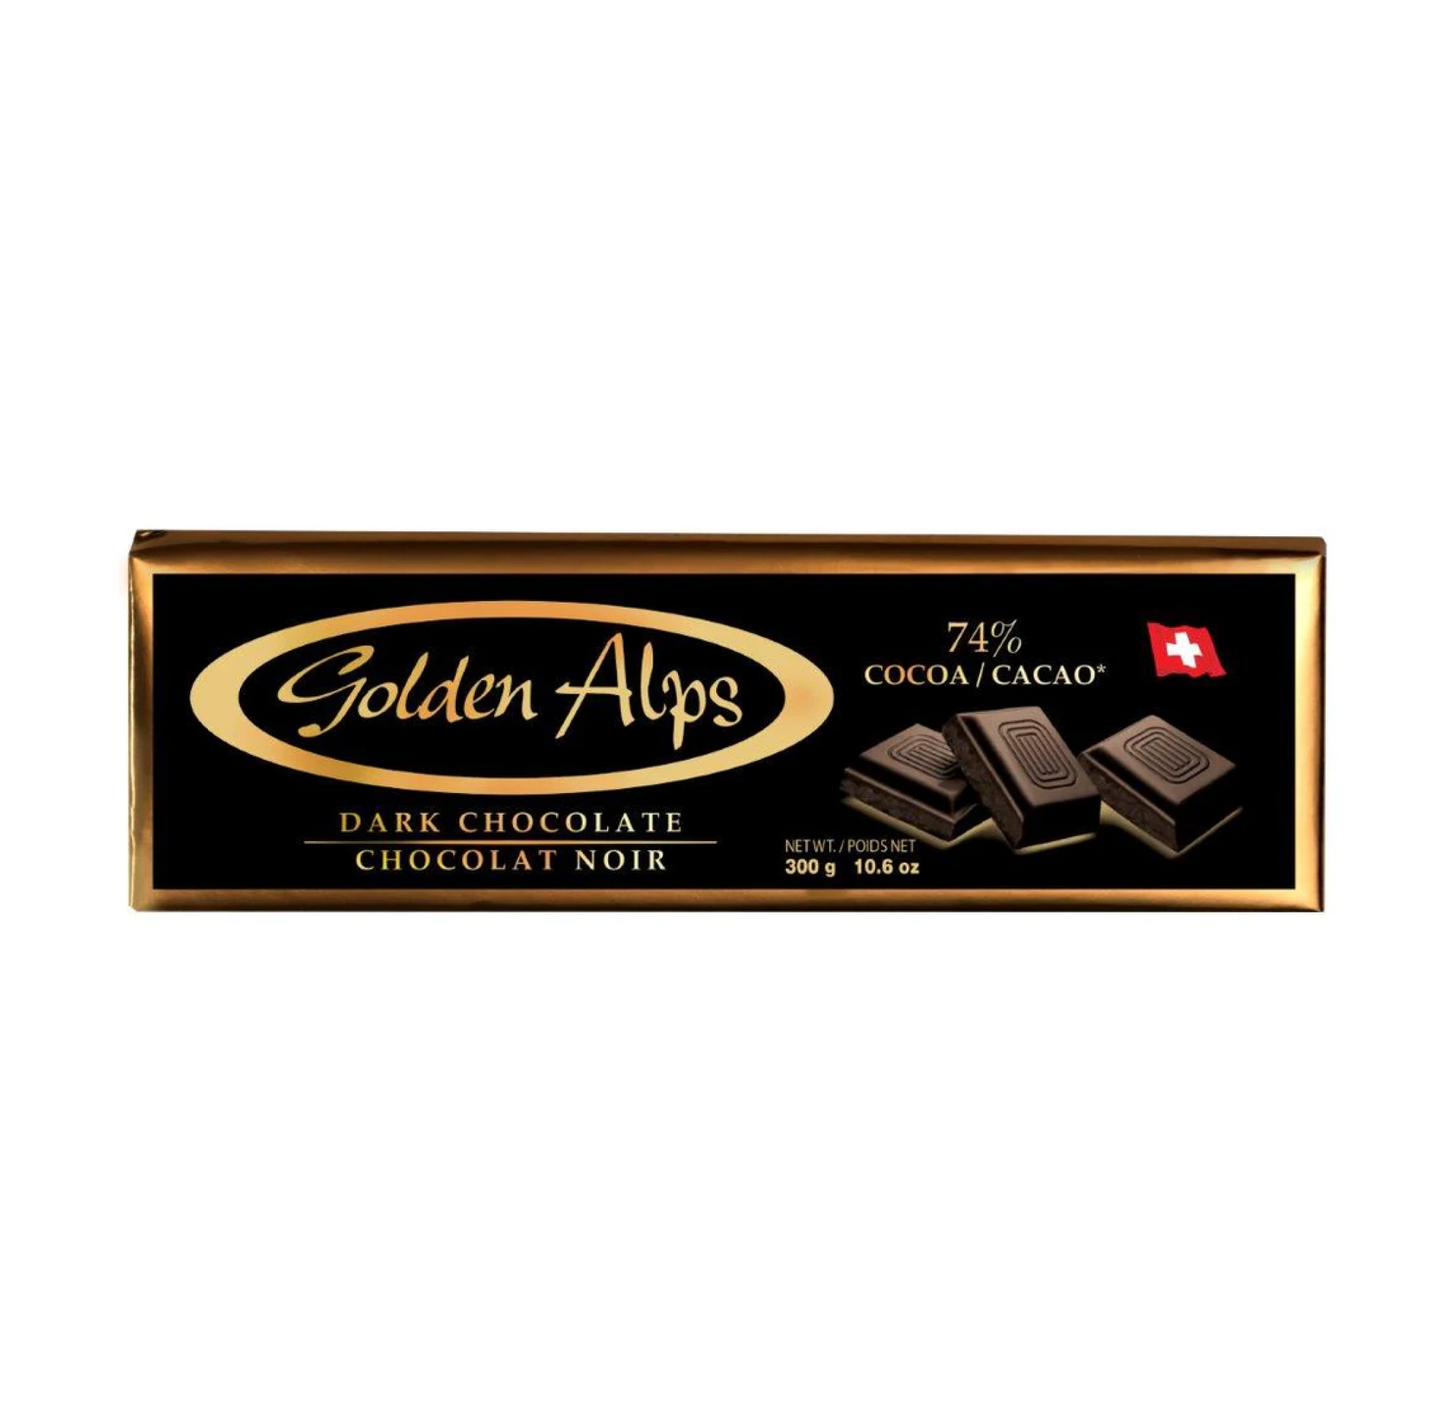 Golden Alps 74% Dark Chocolate 300g